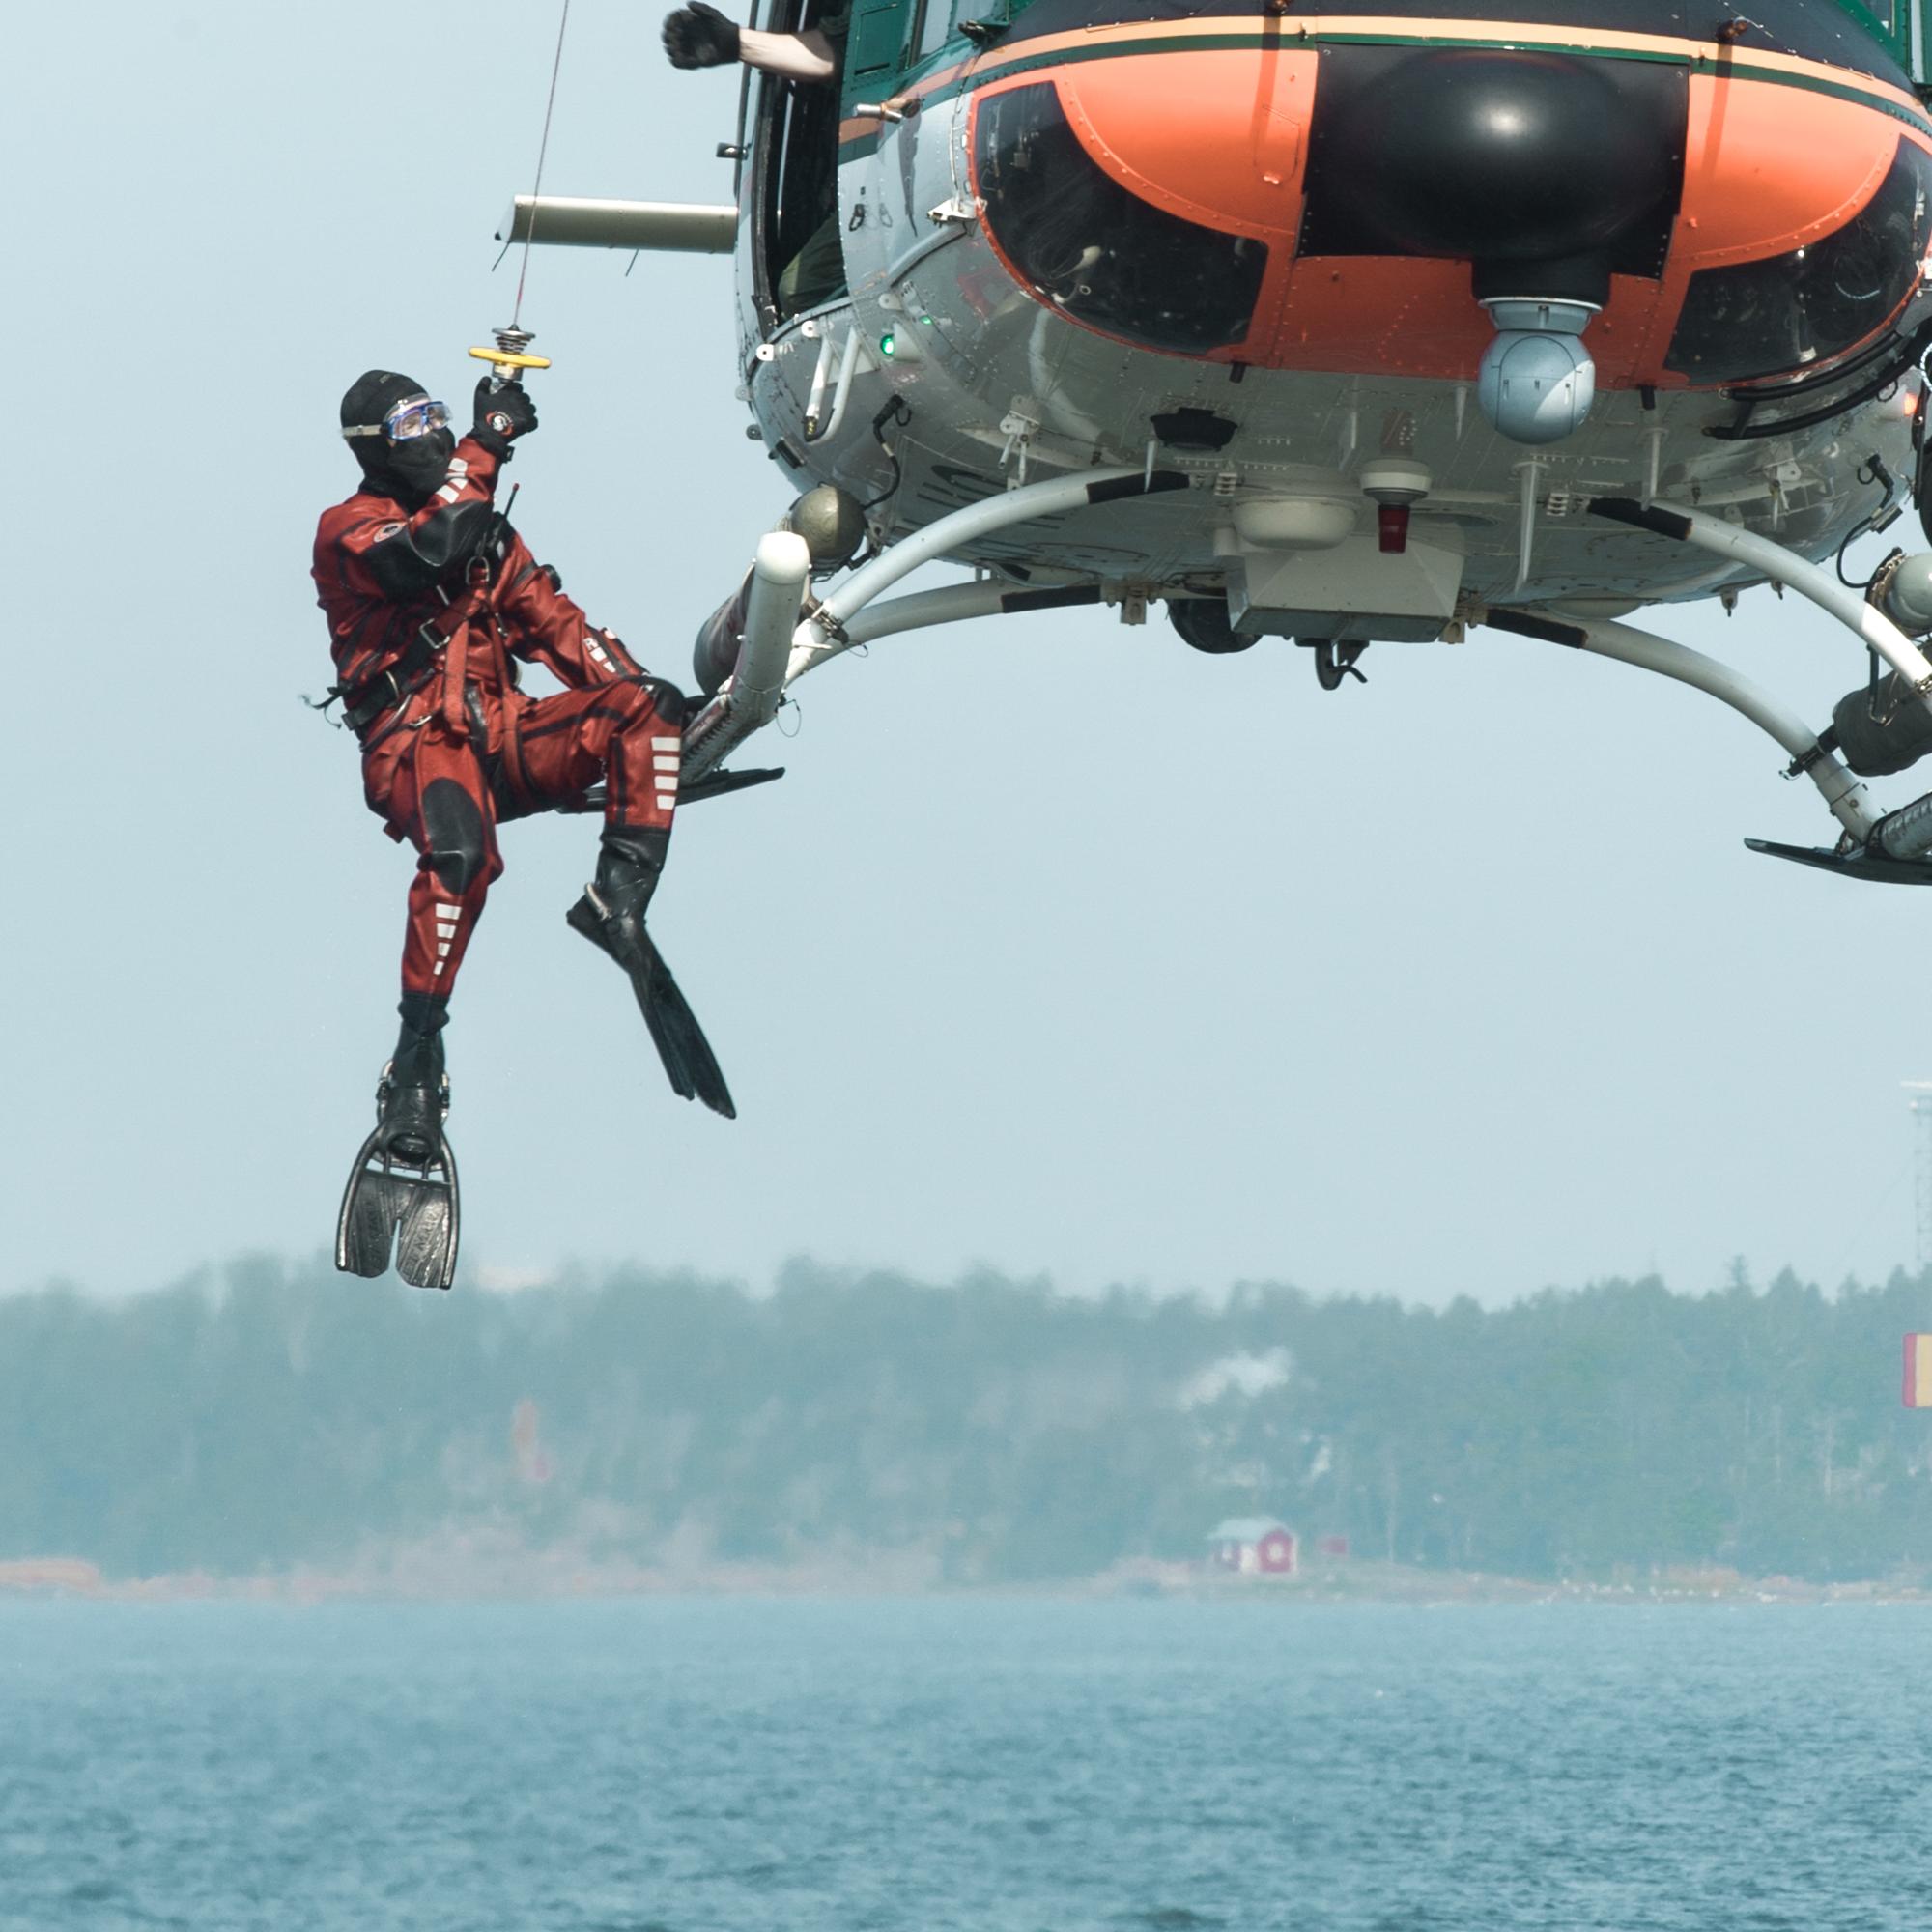 Pintapelastaja laskeutuu helikopterista kohti merta.